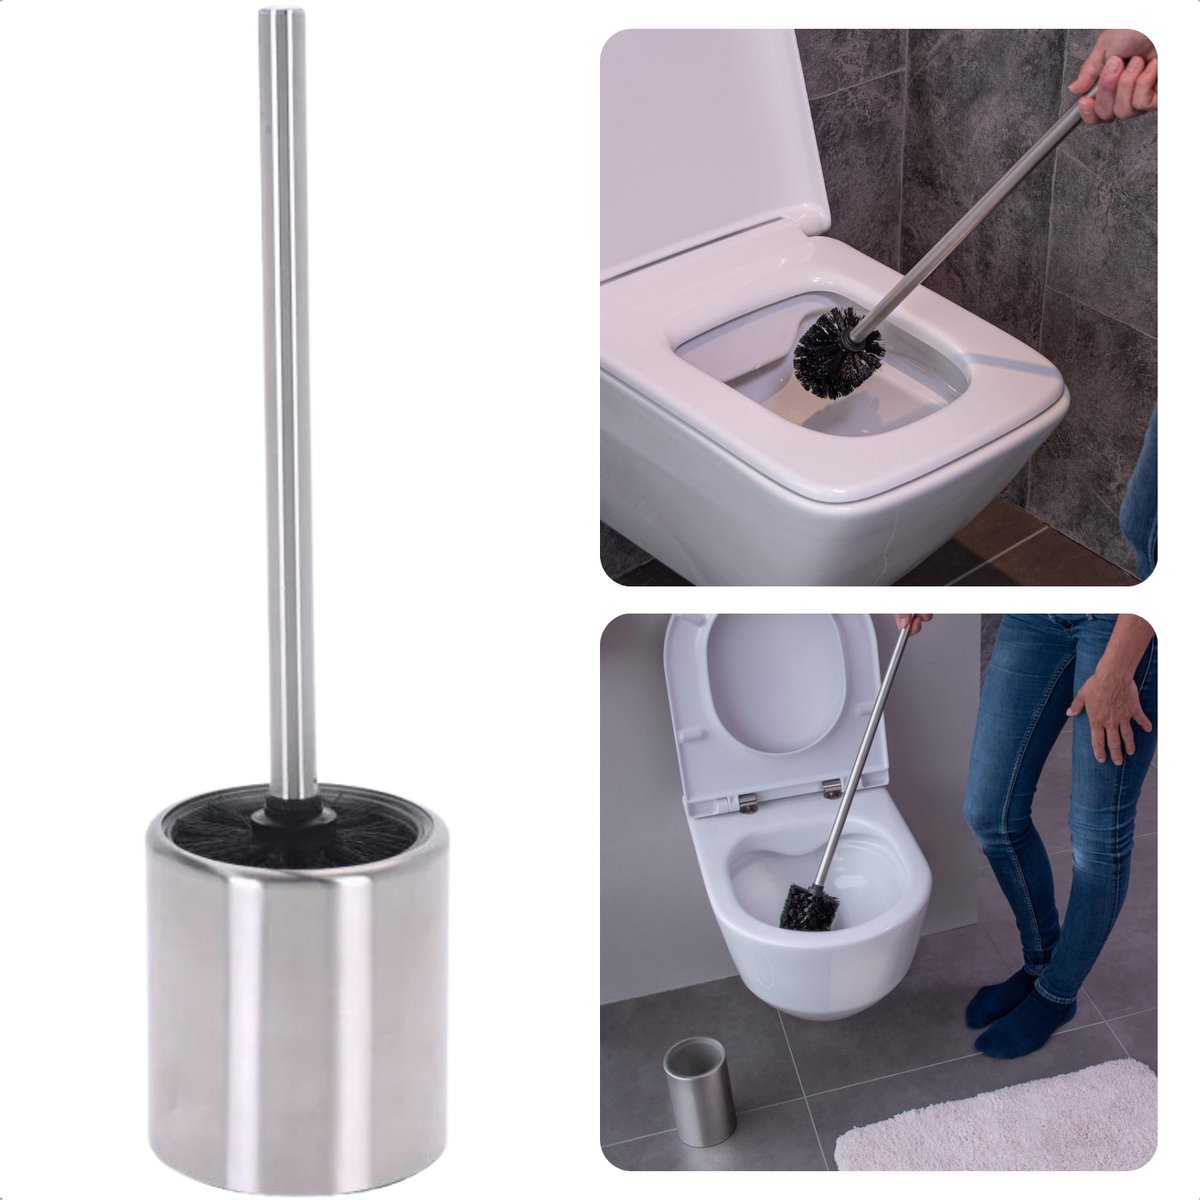 Cheqo® Roestvrijstalen Toiletborstel Met Houder - Stijlvolle Badkamer WC Borstel - 35 cm Hoog - Duurzaam RVS - Elegante Toiletborstelhouder - Toilet Borstel Houder